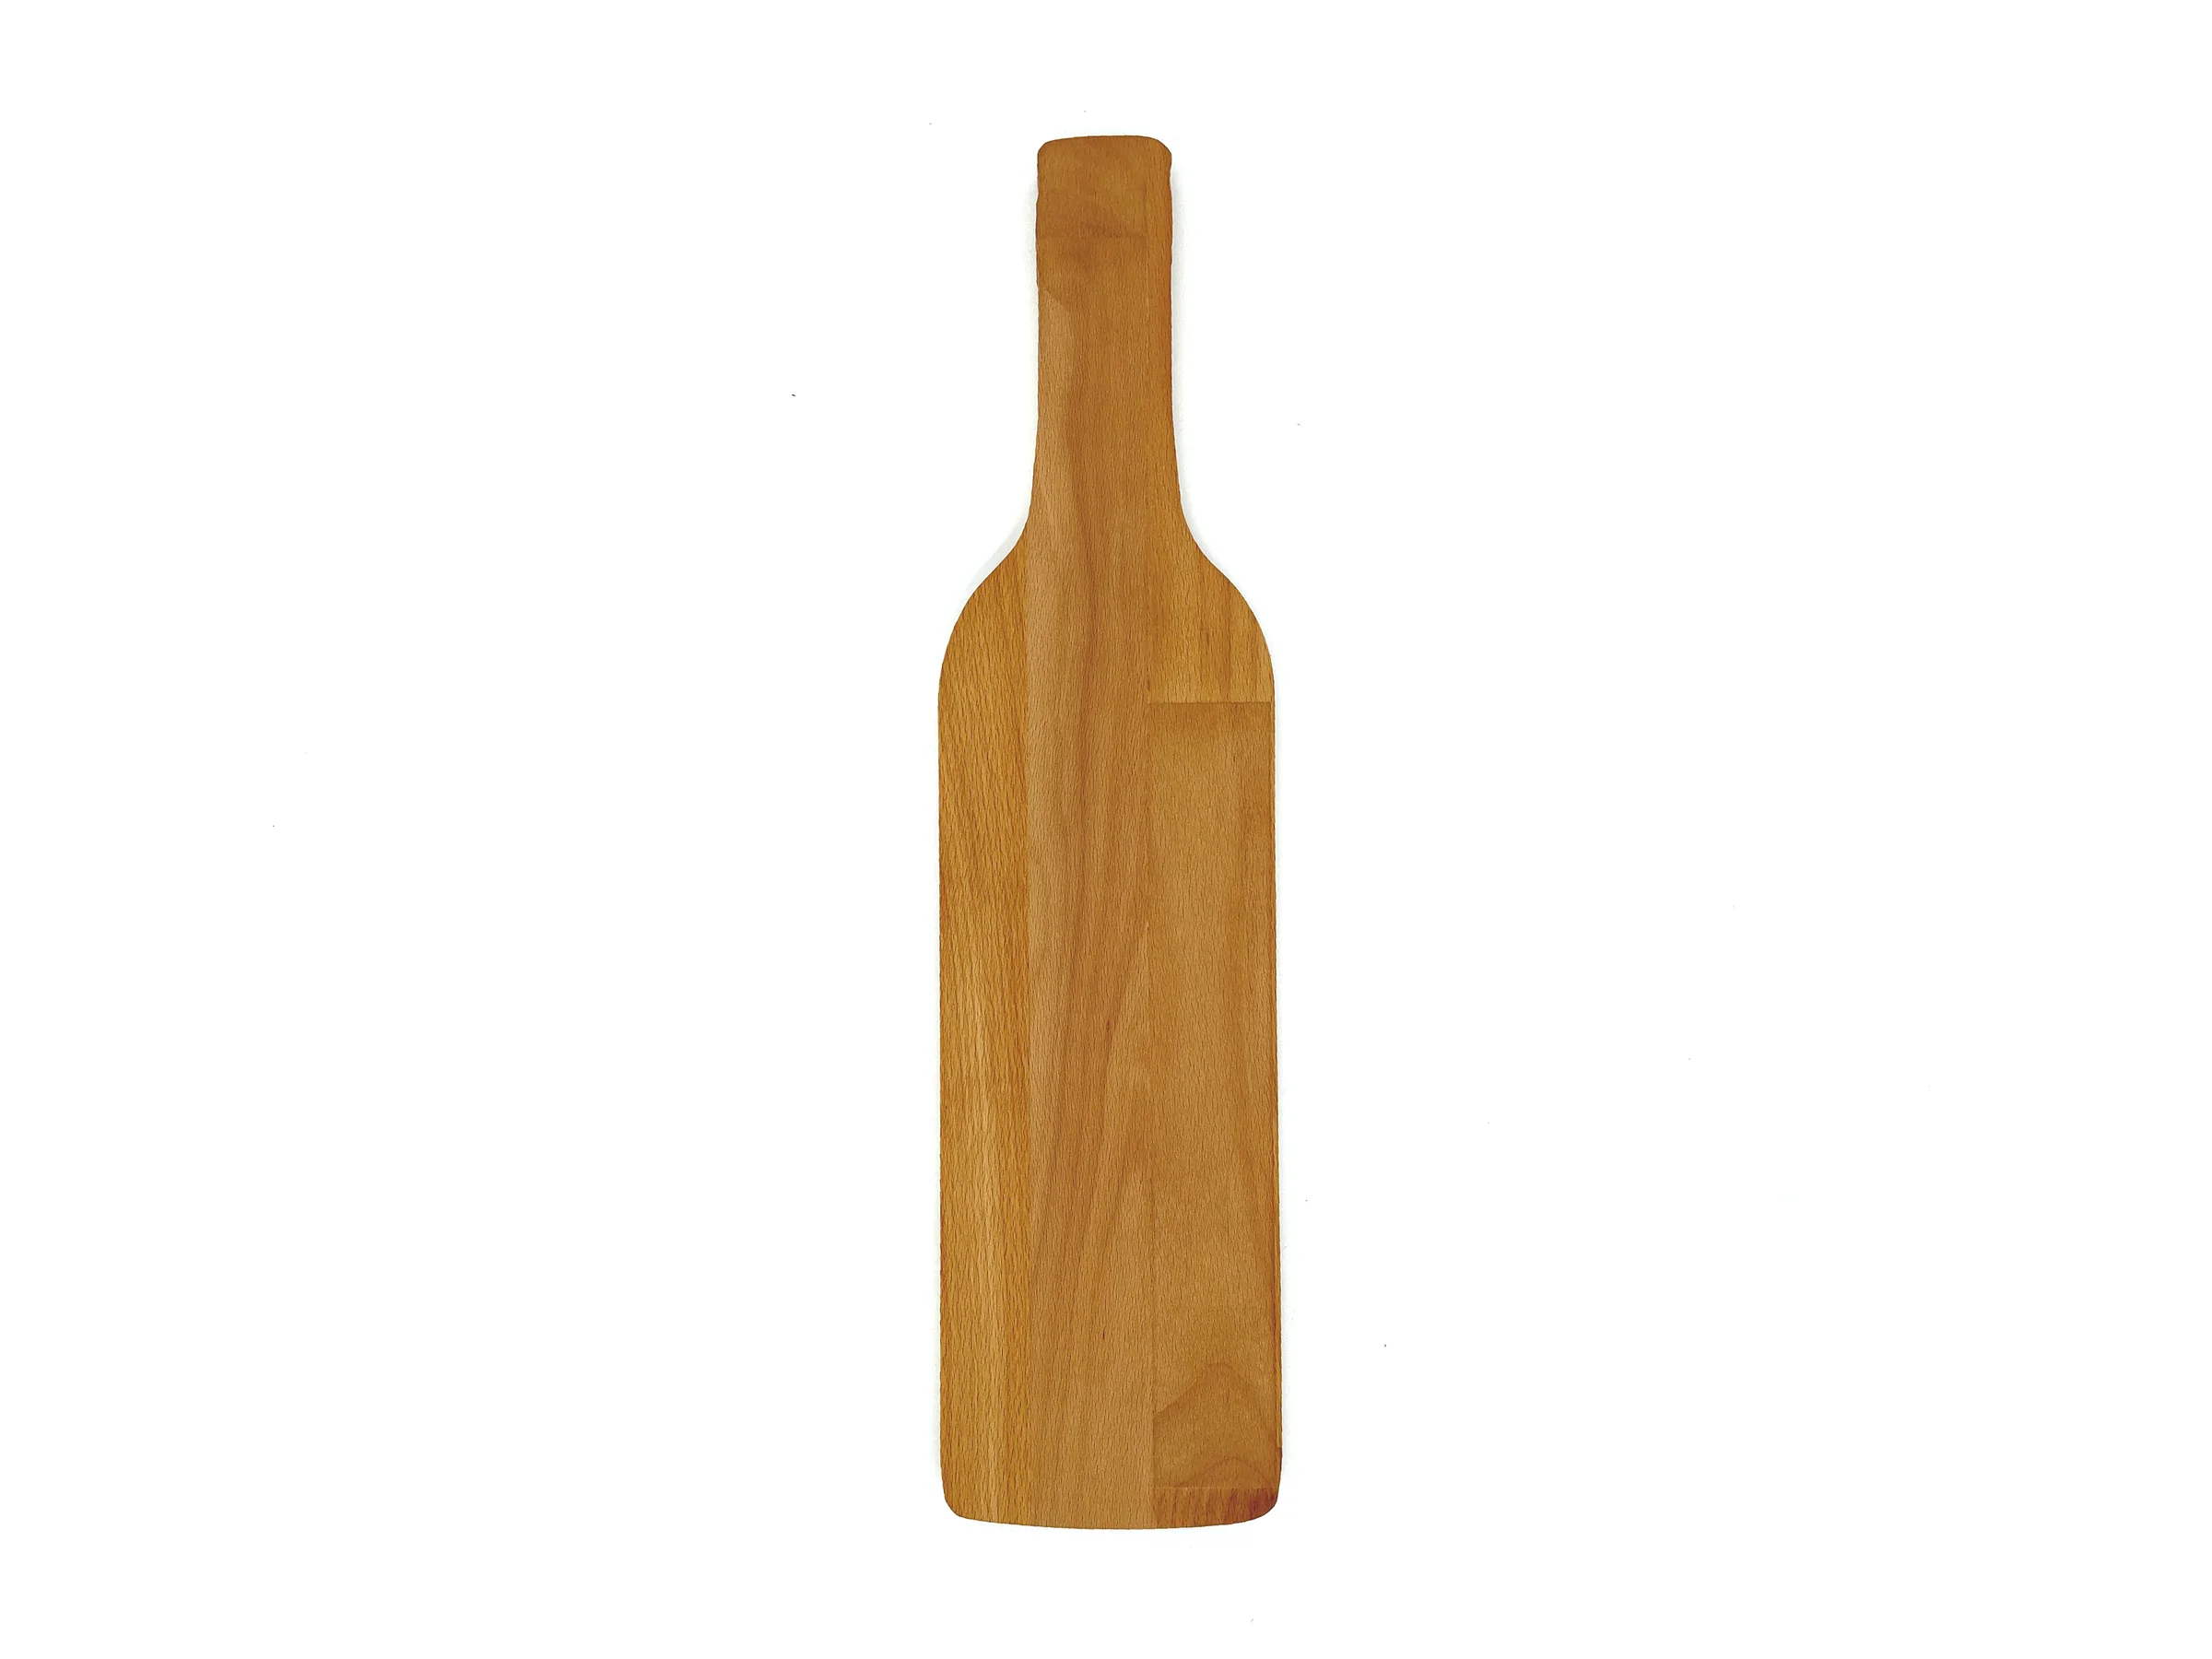 Planche personnalisée en forme de bouteille de vin - Dassel - Zaprinta Belgique